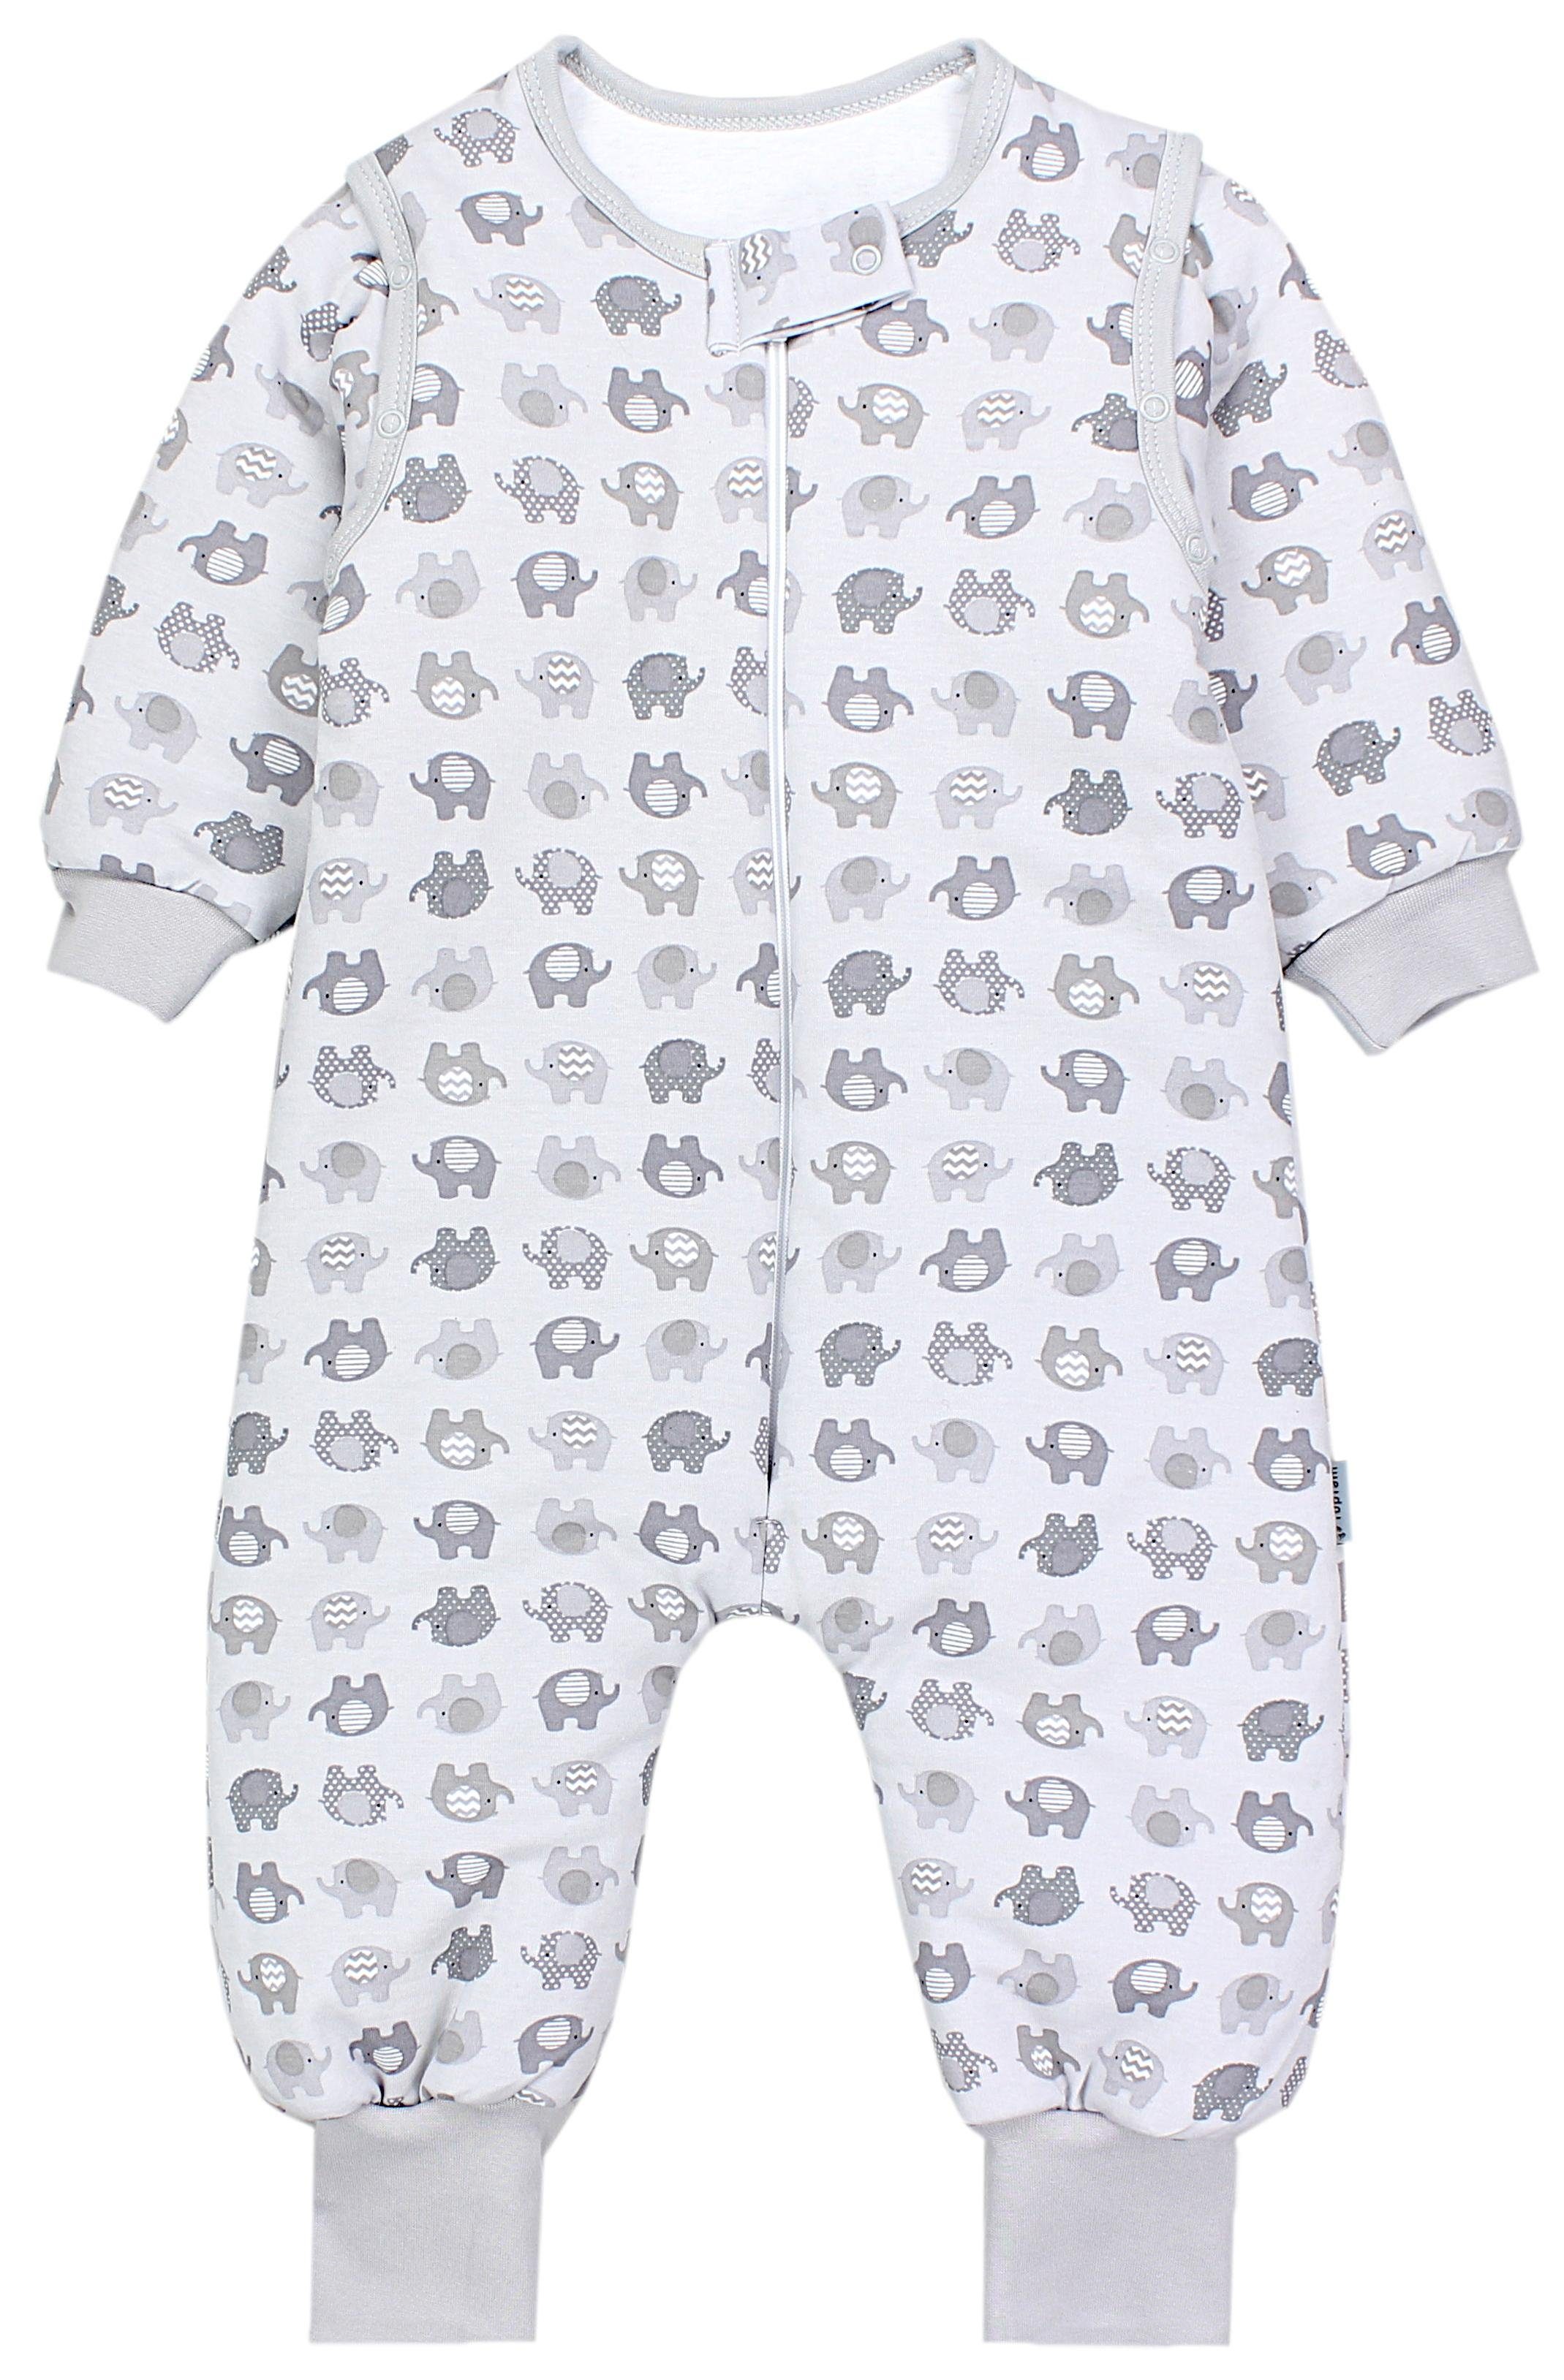 TupTam Babyschlafsack mit Beinen und Ärmel Winter OEKO-TEX zertifiziert Unisex Elefant Grau